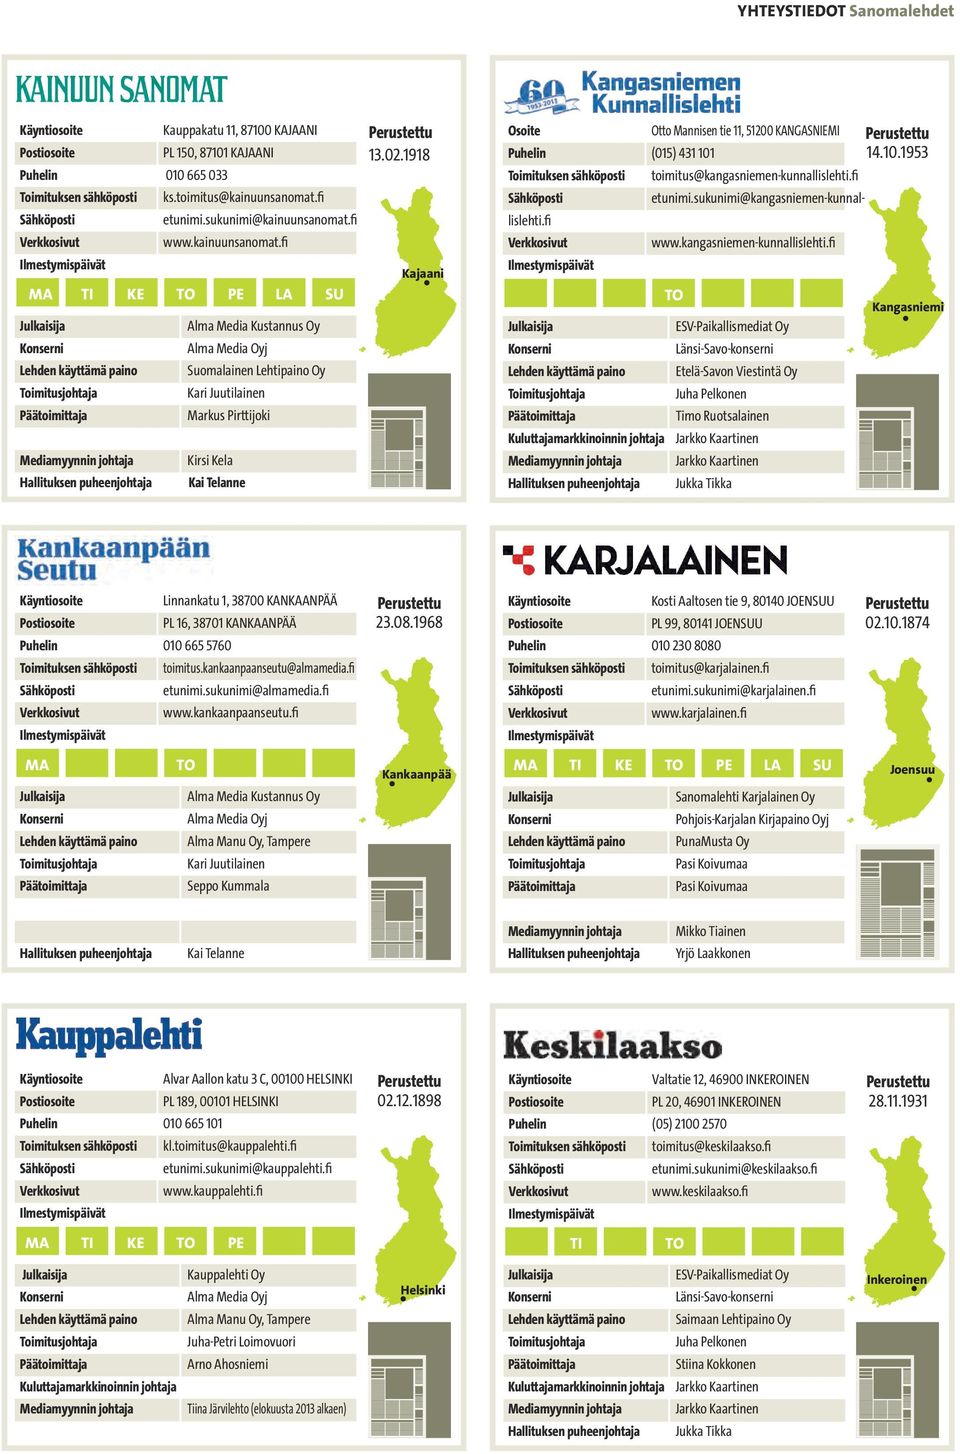 10.1953 Kangasniemi Linnankatu 1, 38700 KANKAANPÄÄ PL 16, 38701 KANKAANPÄÄ Puhelin 010 665 5760 imitus.kankaanpaanseutu@almedia.fi www.kankaanpaanseutu.fi 23.08.